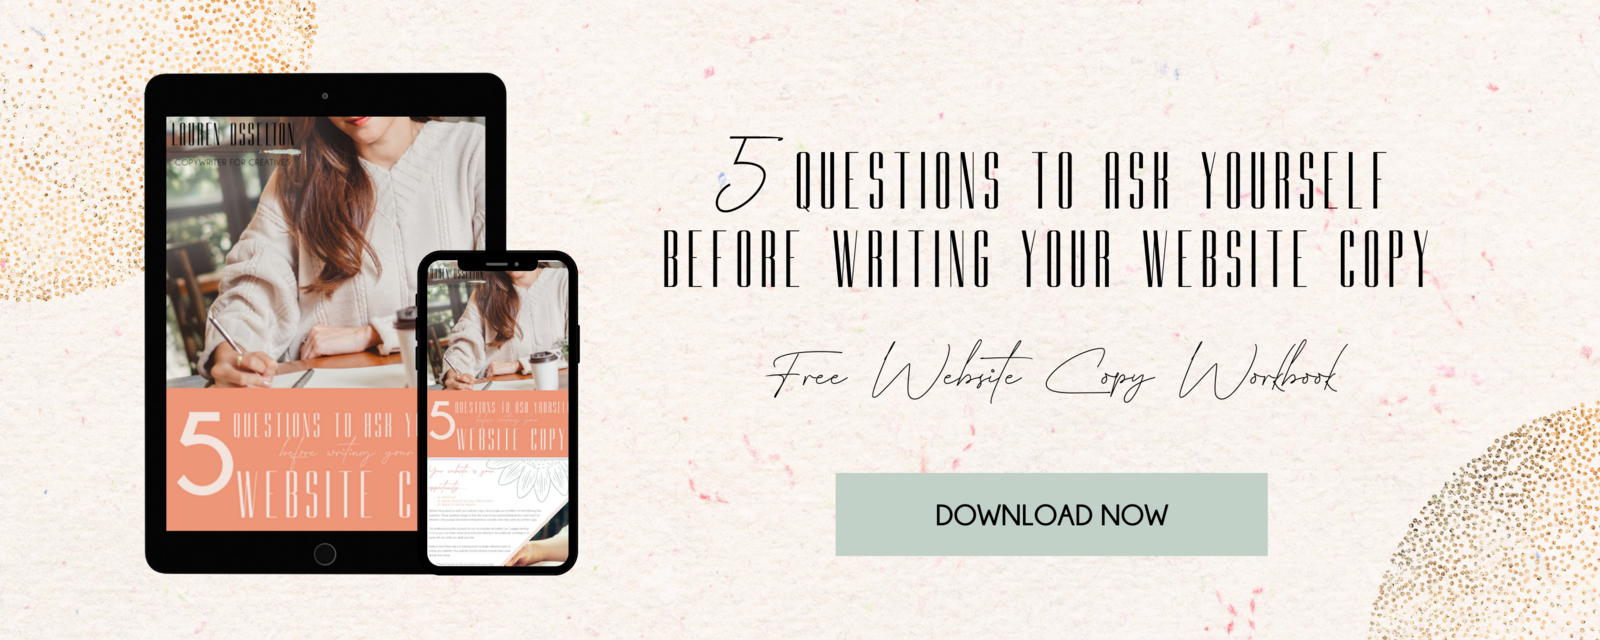 Lauren Osselton - Freebie- 5 Questions Ask Yourself - Website Copy Workbook